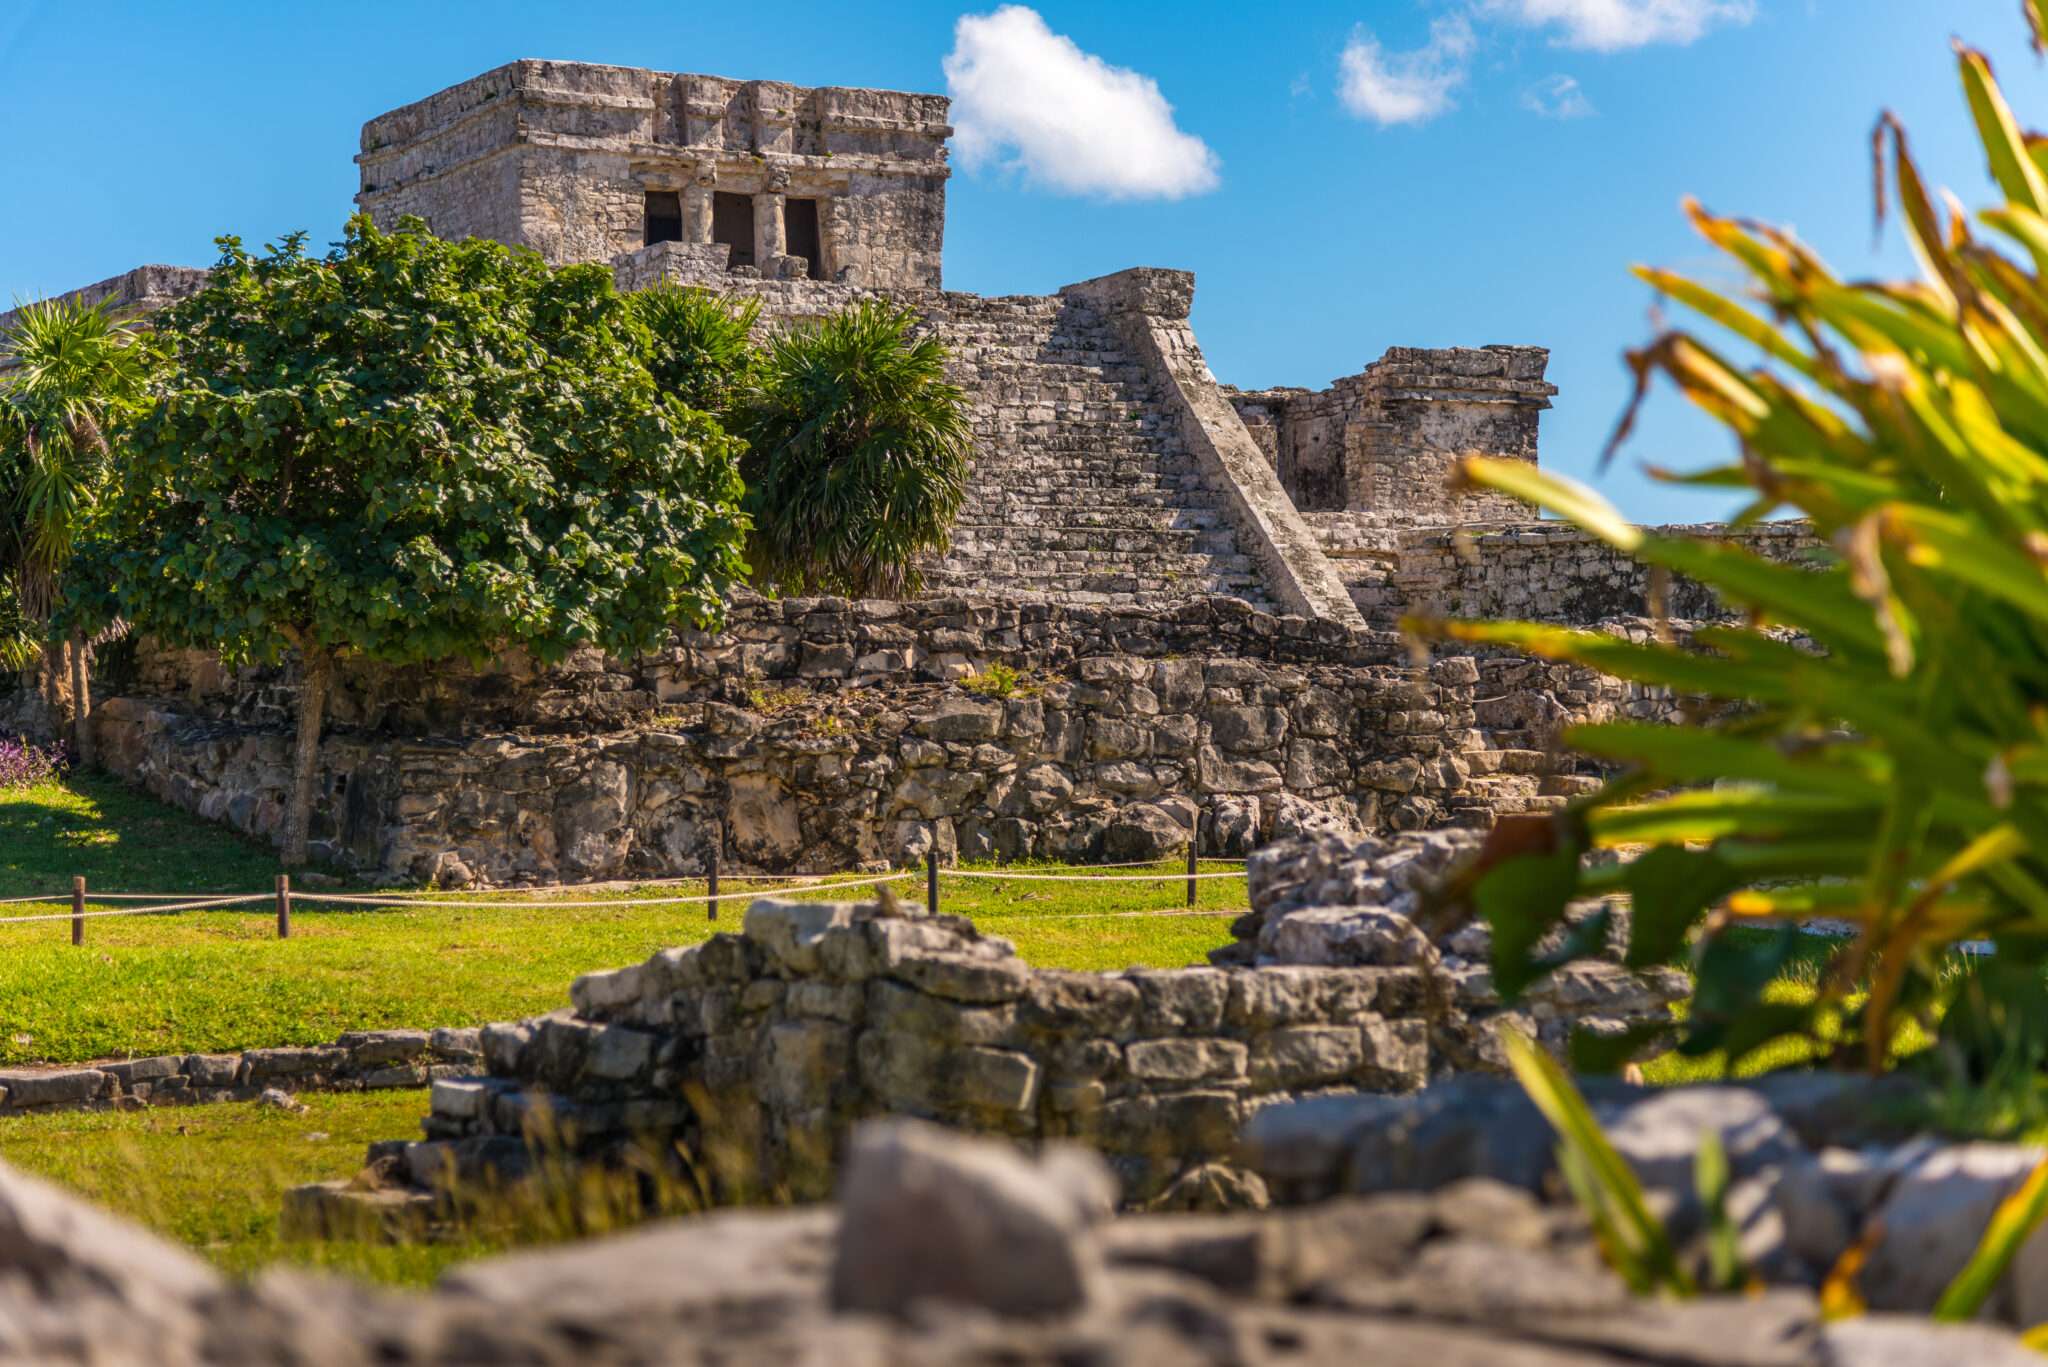 メキシコのトゥルムの遺跡は、マヤとスペインの影響が融合した魅力的な遺跡です。